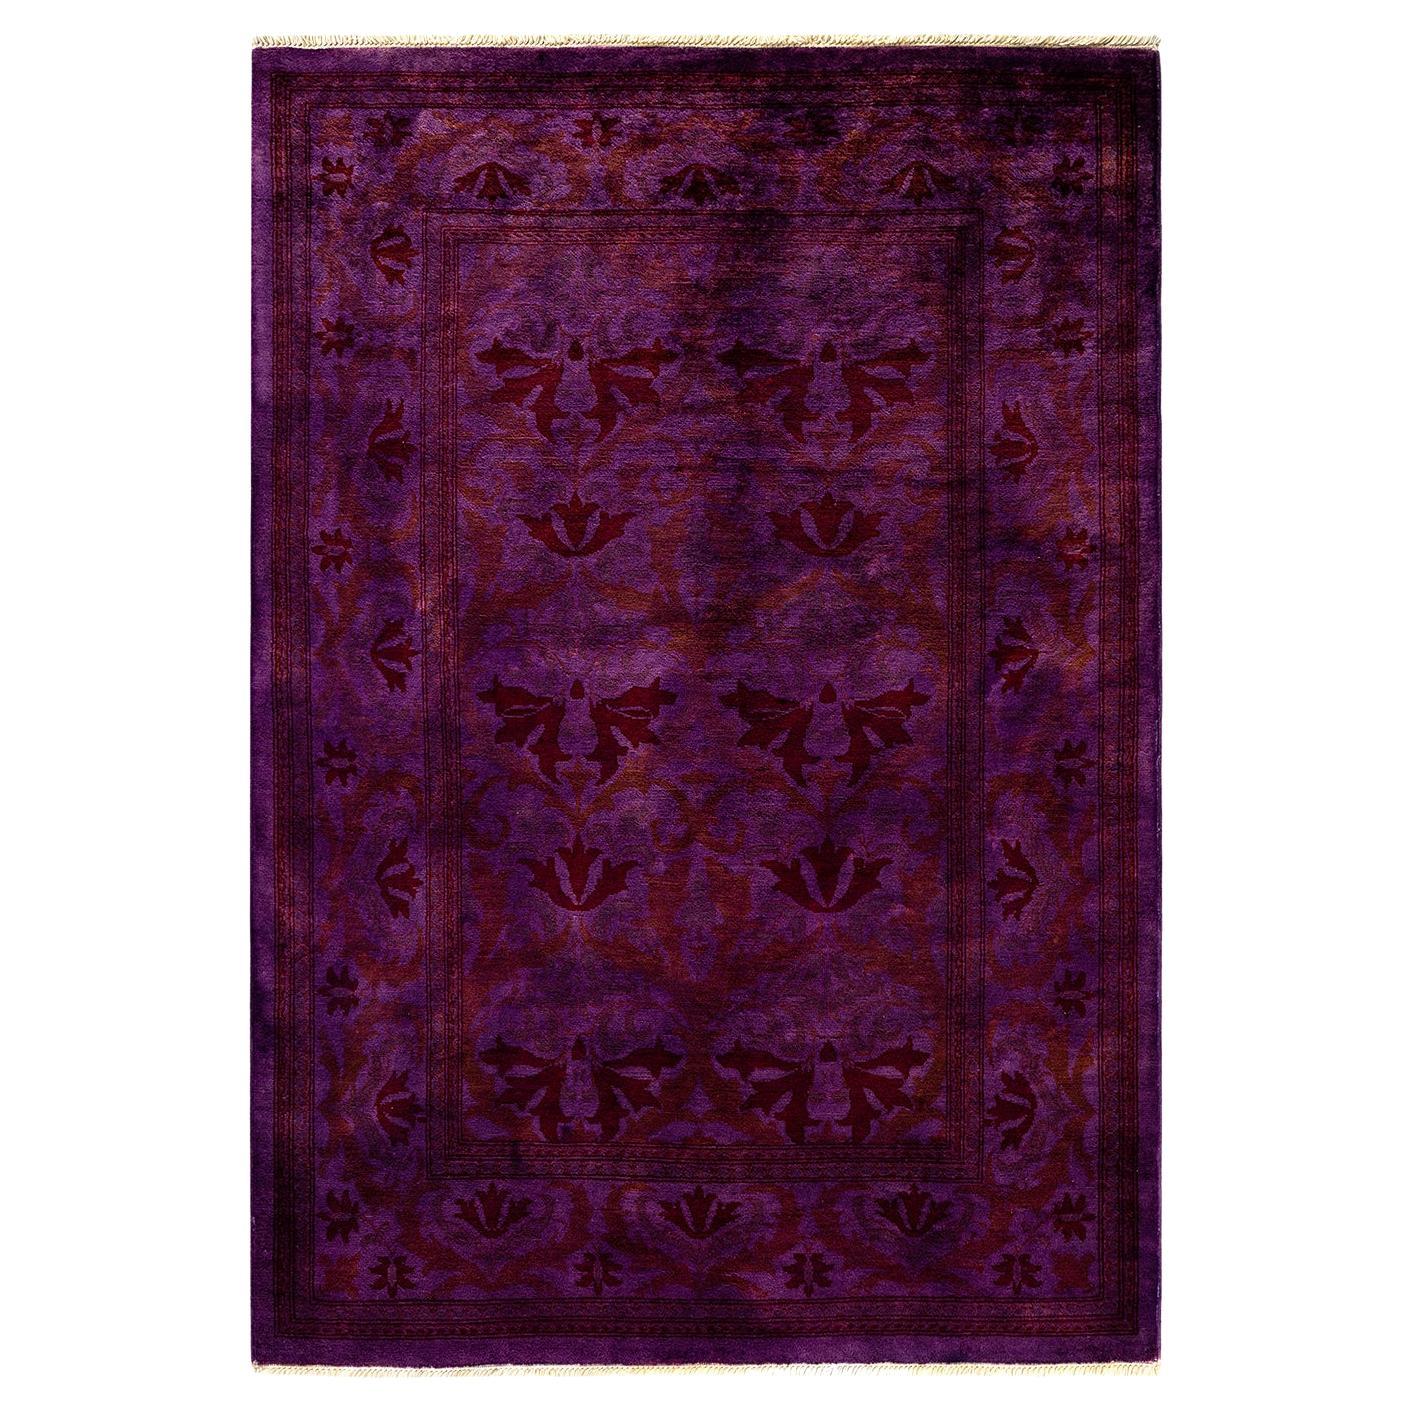 Violetter Teppich aus handgeknüpfter Wolle, gefärbt